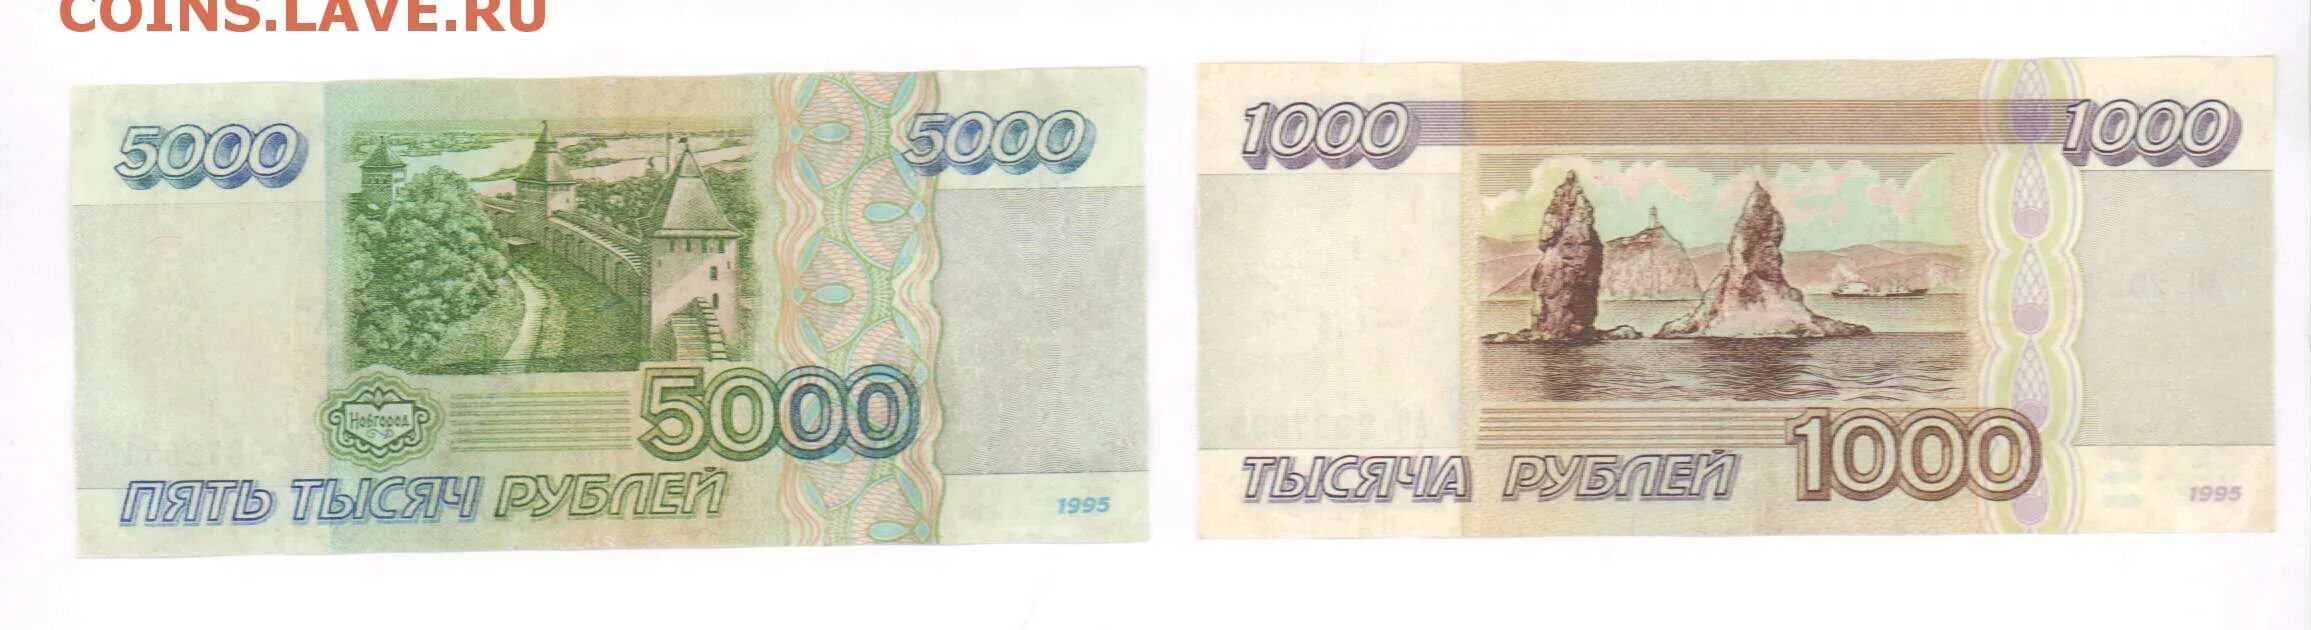 5000 Рублей 1995 года. 5000 Тысяч 1995. 1000 Рублей реверс. 5000 И 1000 рублей 1995 года.